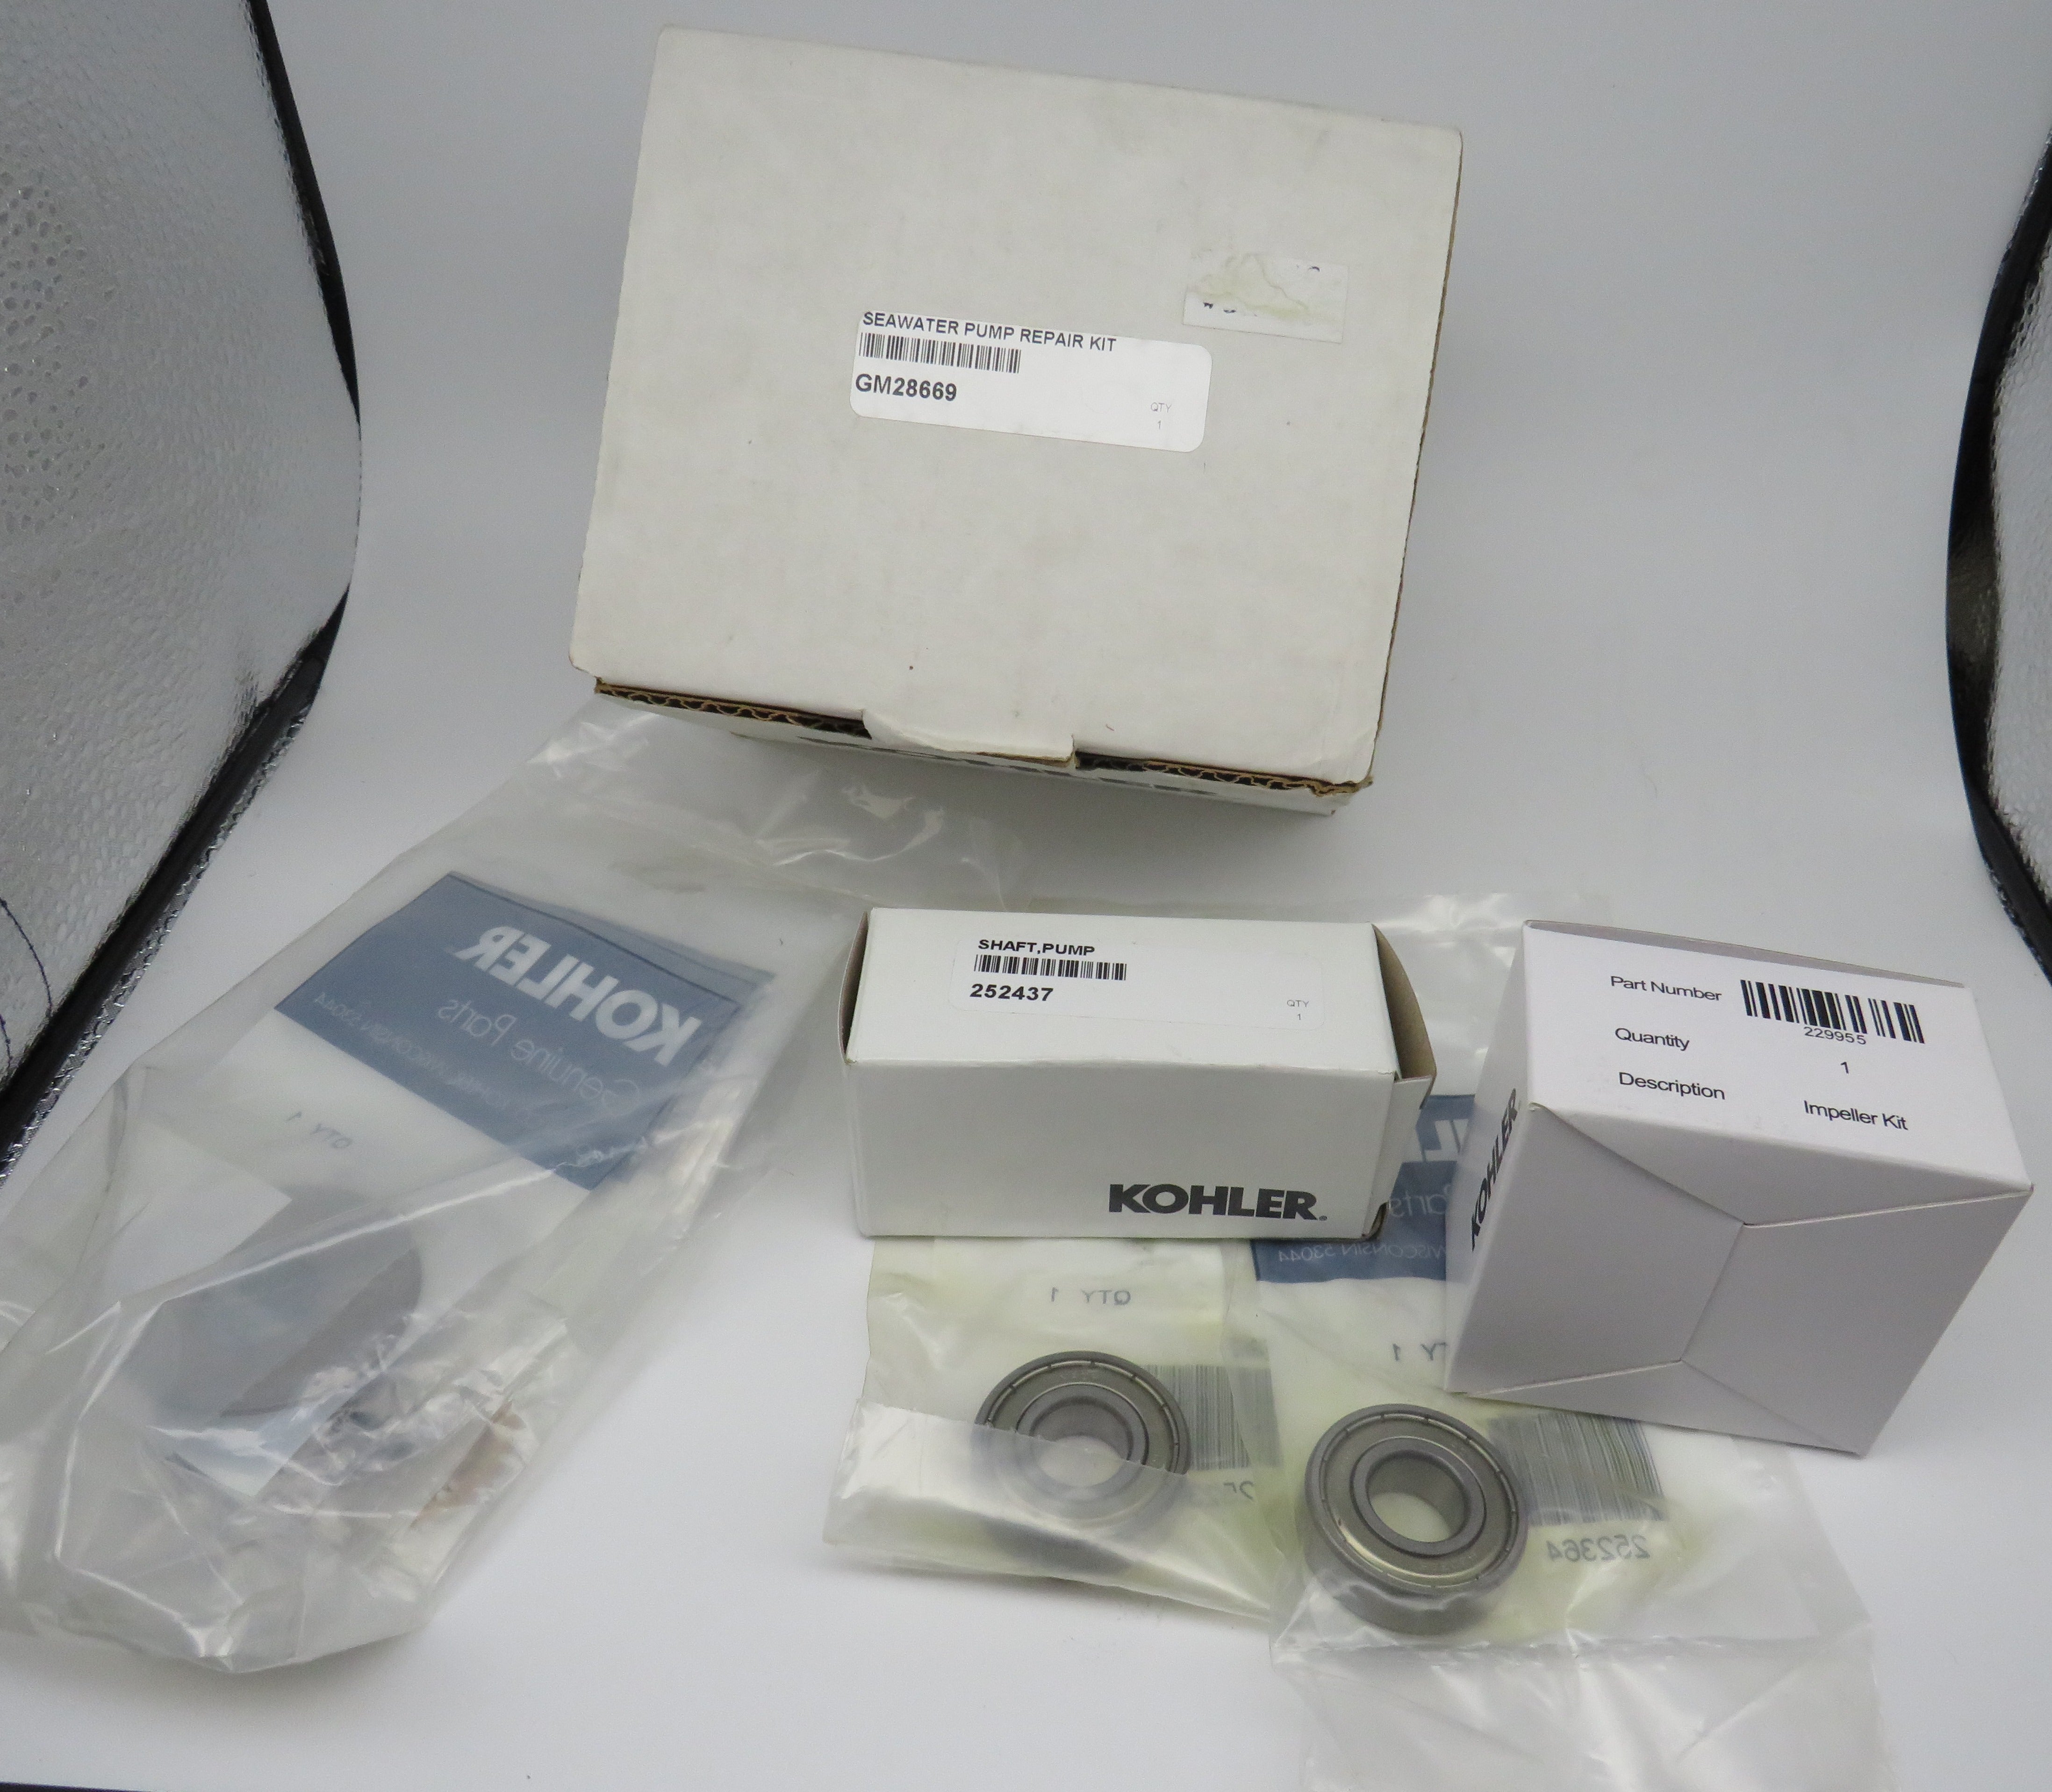 GM28669 Kohler Cooling Seawater Pump Repair Kit